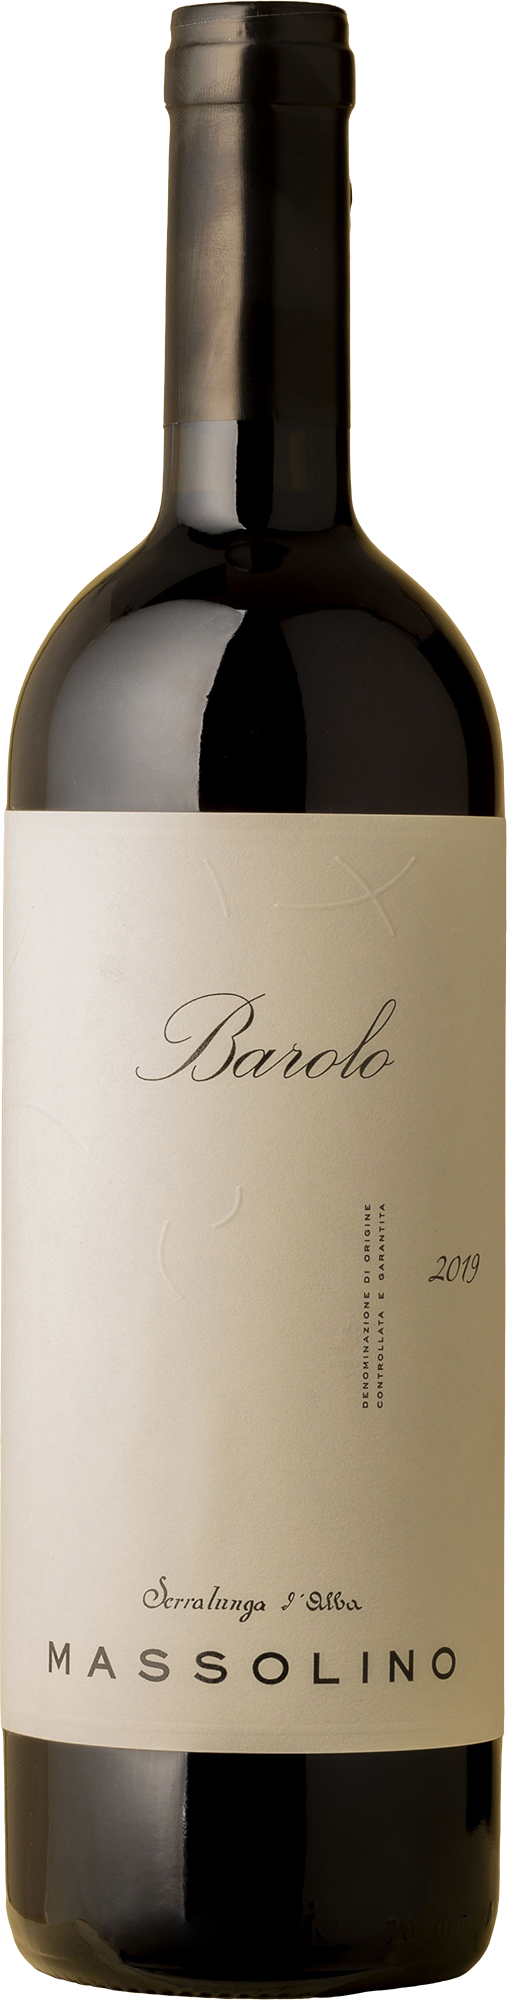 Massolino - Barolo Nebbiolo 2019 Red Wine